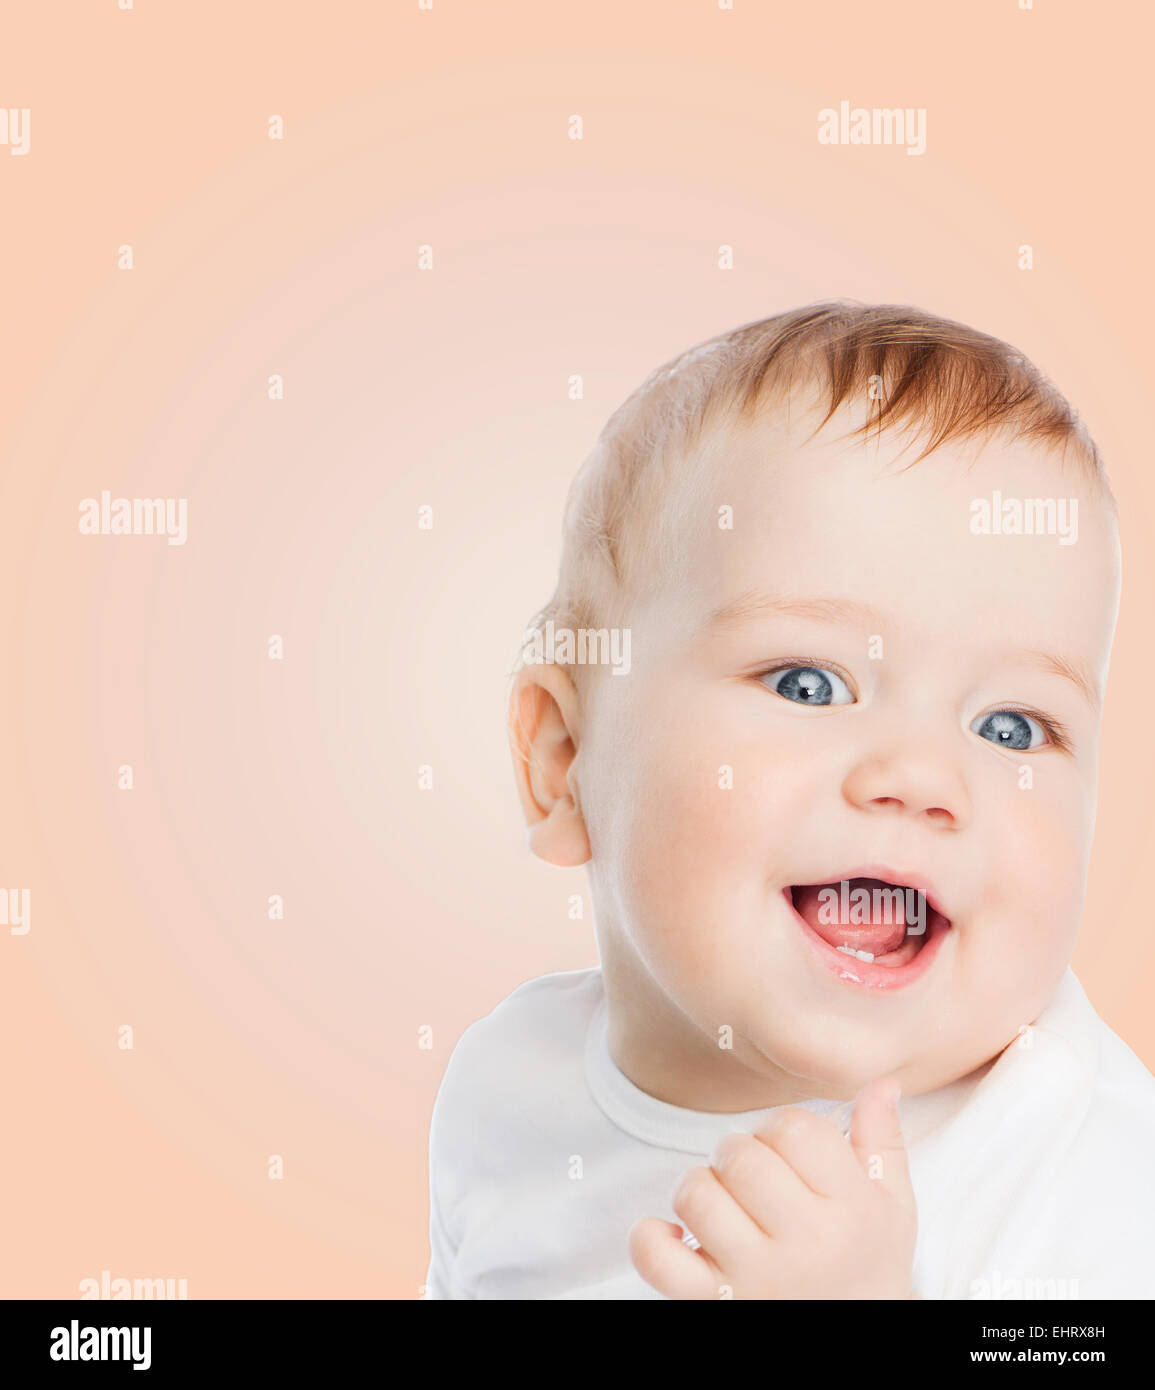 bébé souriant Banque D'Images